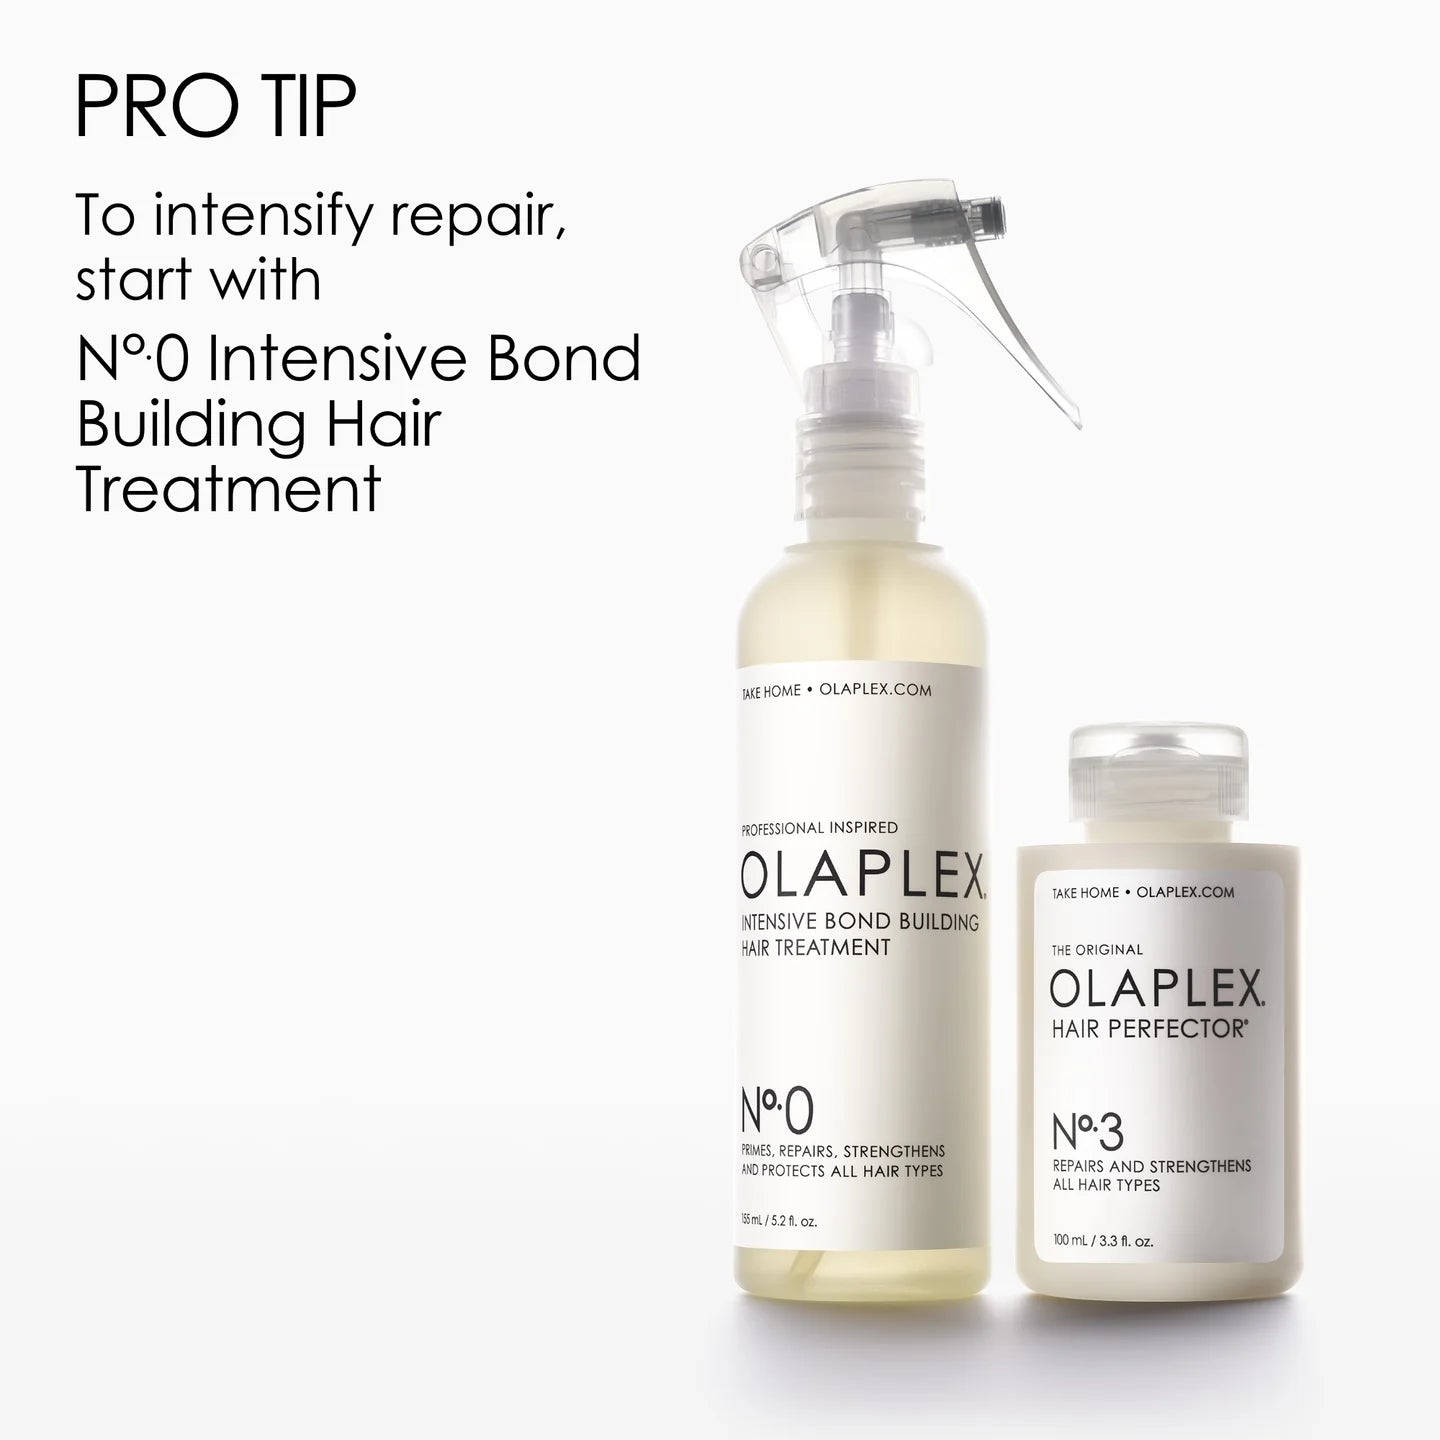 Olaplex No.3 Hair Perfector™